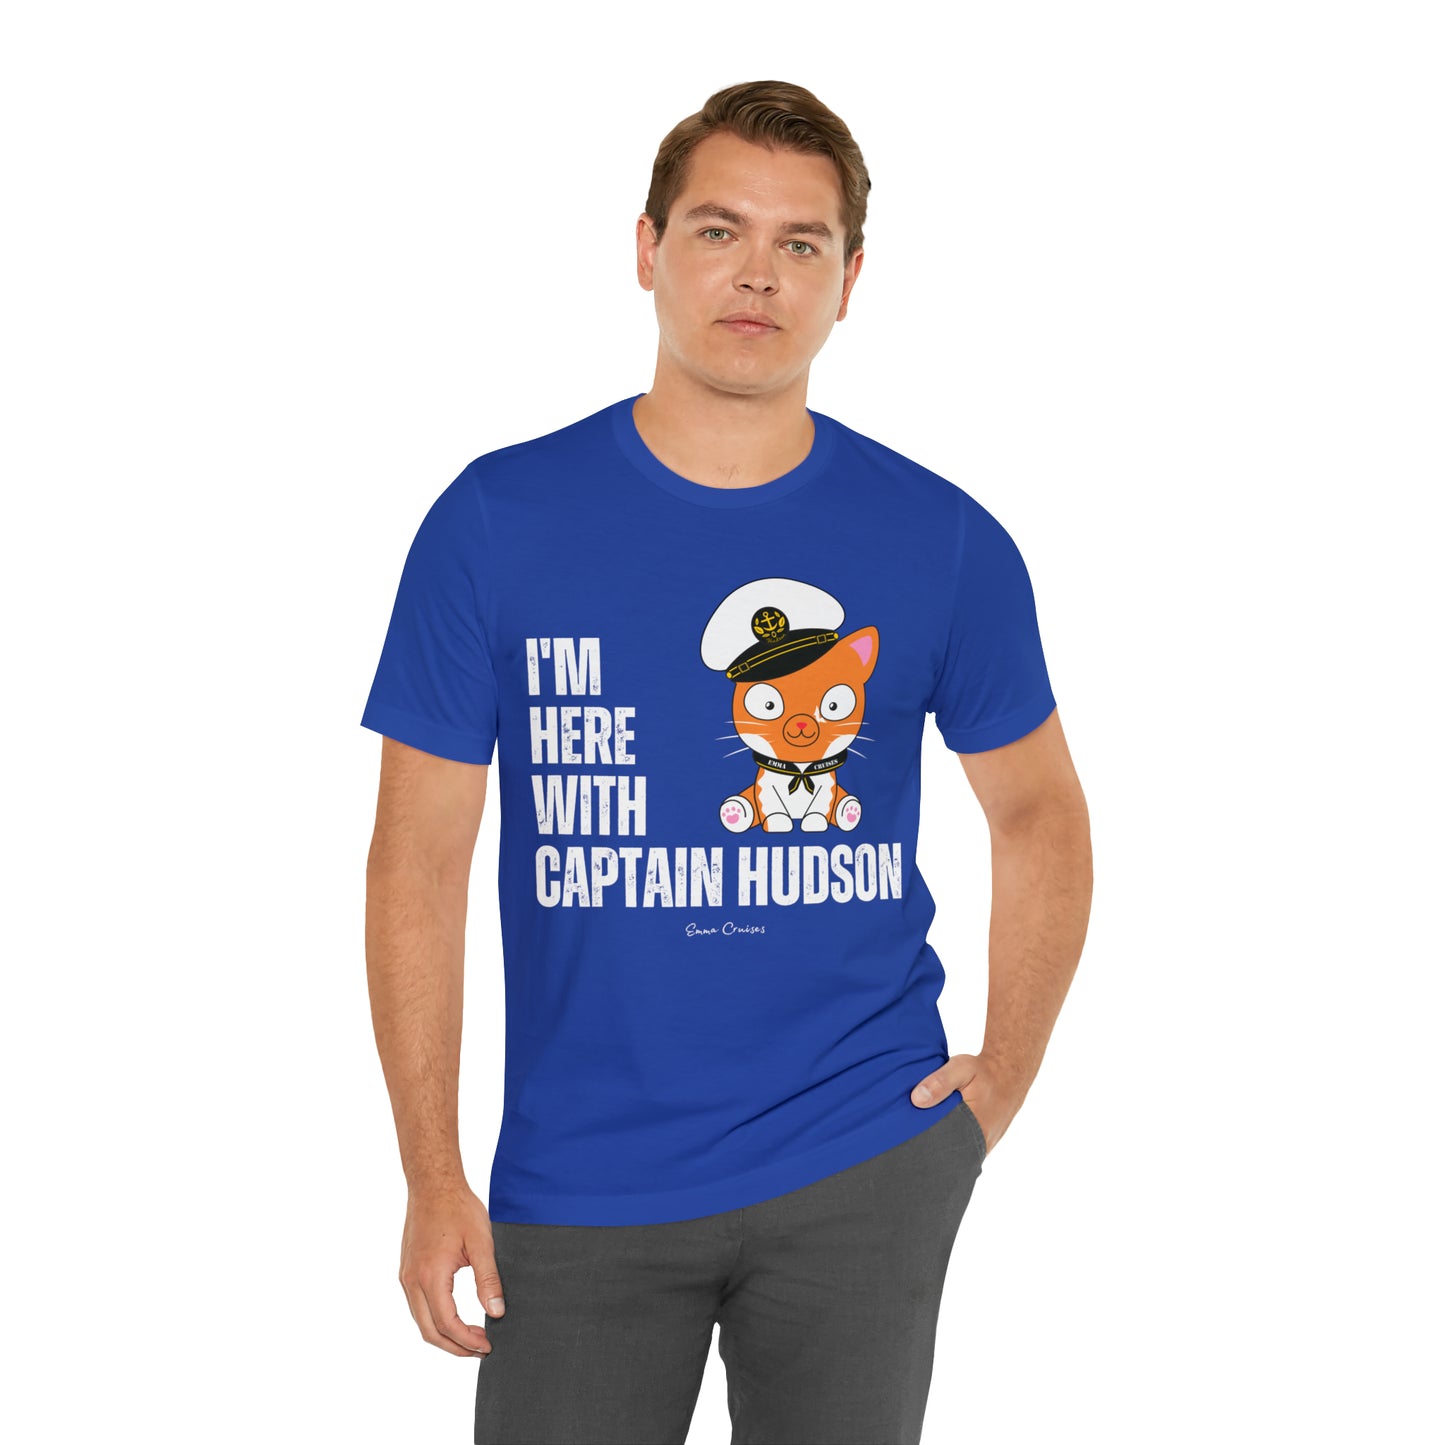 Estoy con el Capitán Hudson - Camiseta UNISEX